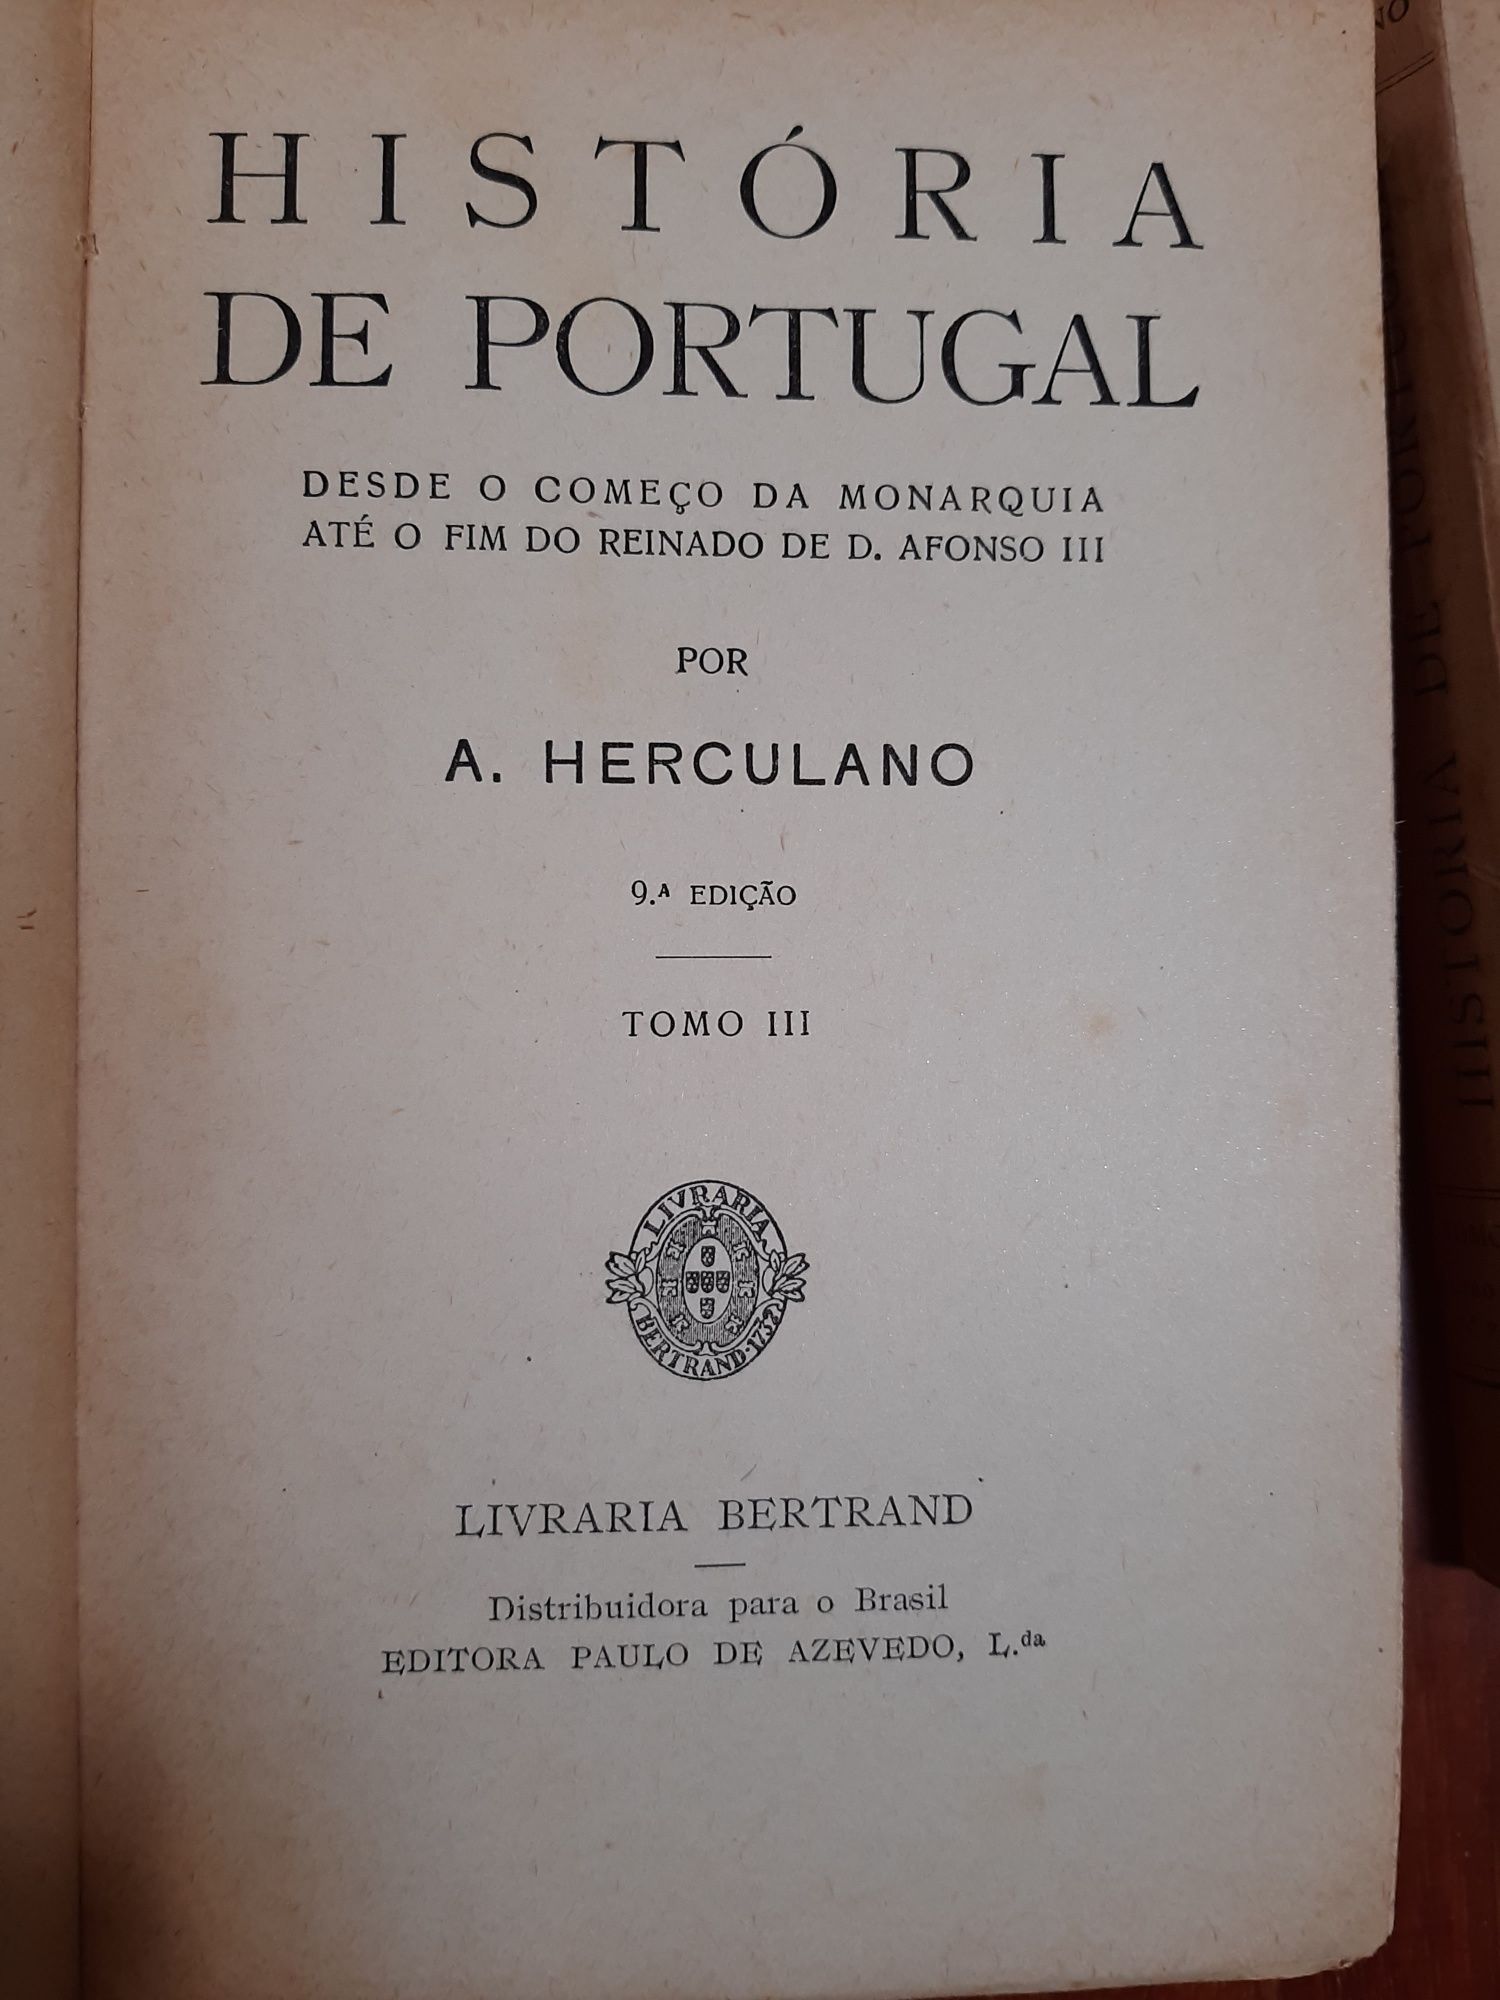 Obras de Alexandre Herculano 9a edição